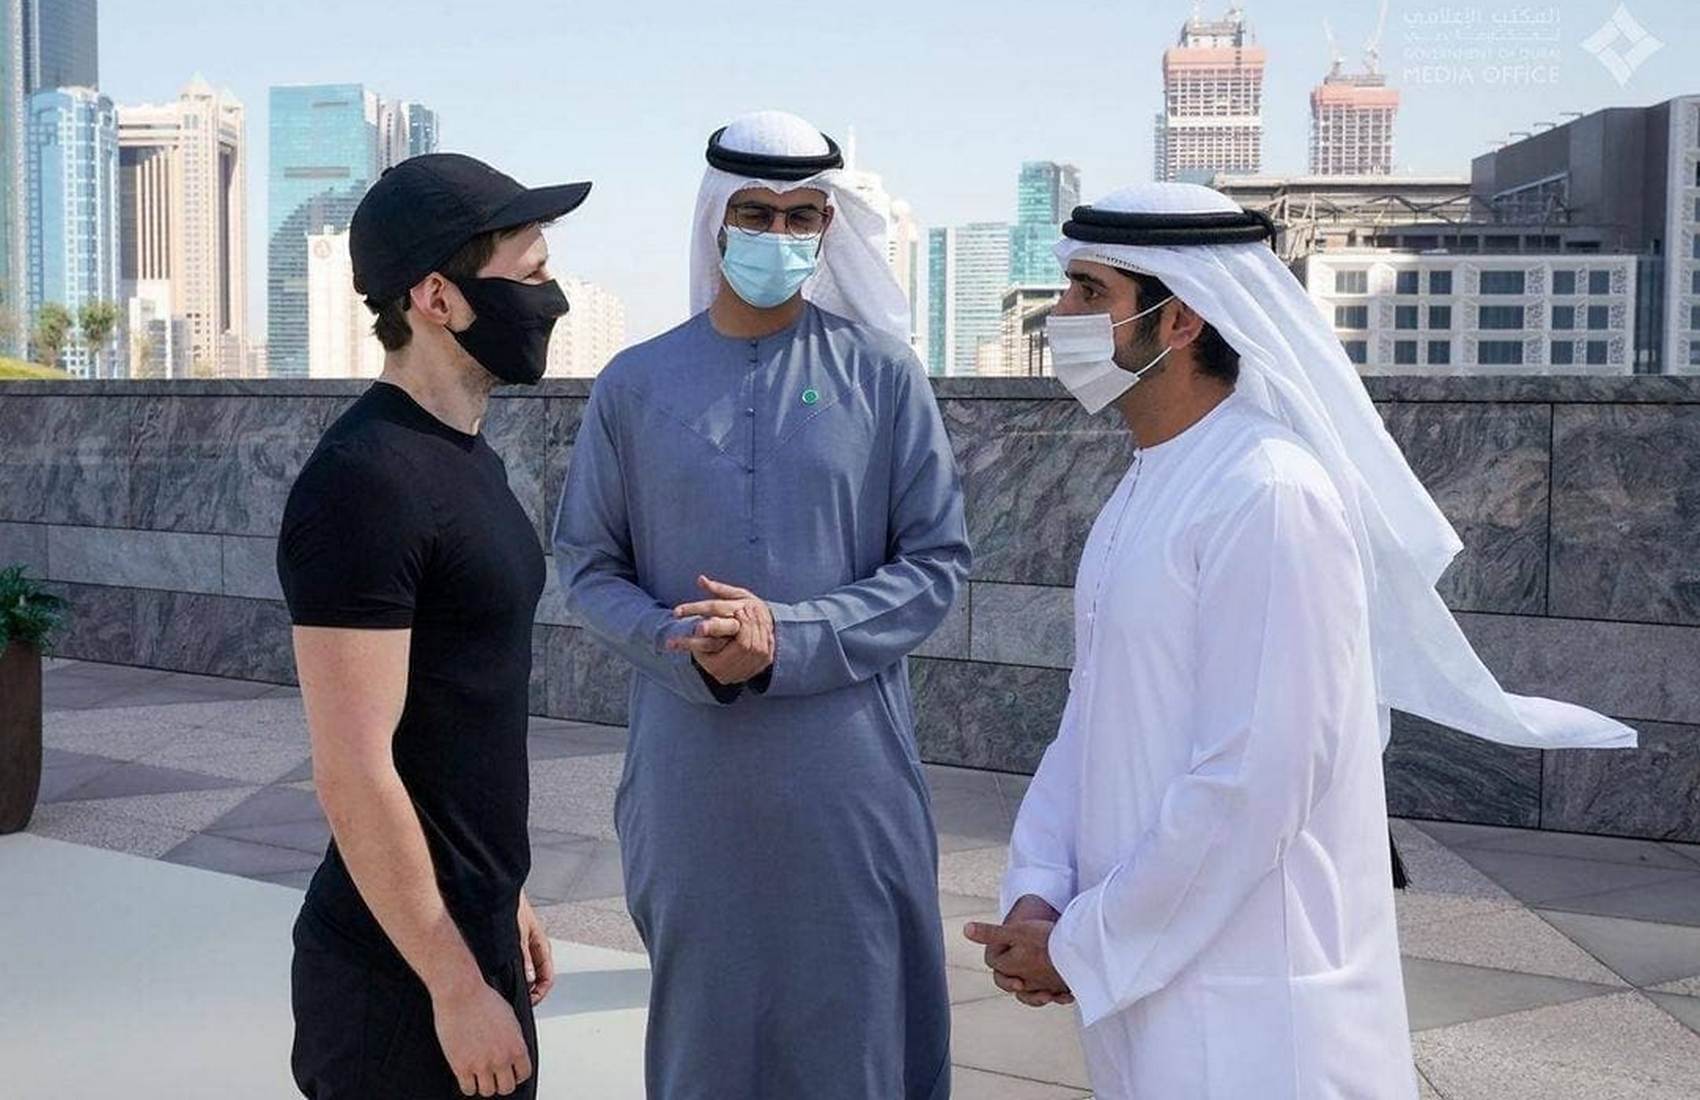 Павел Дуров встретился с наследным принцем Дубая